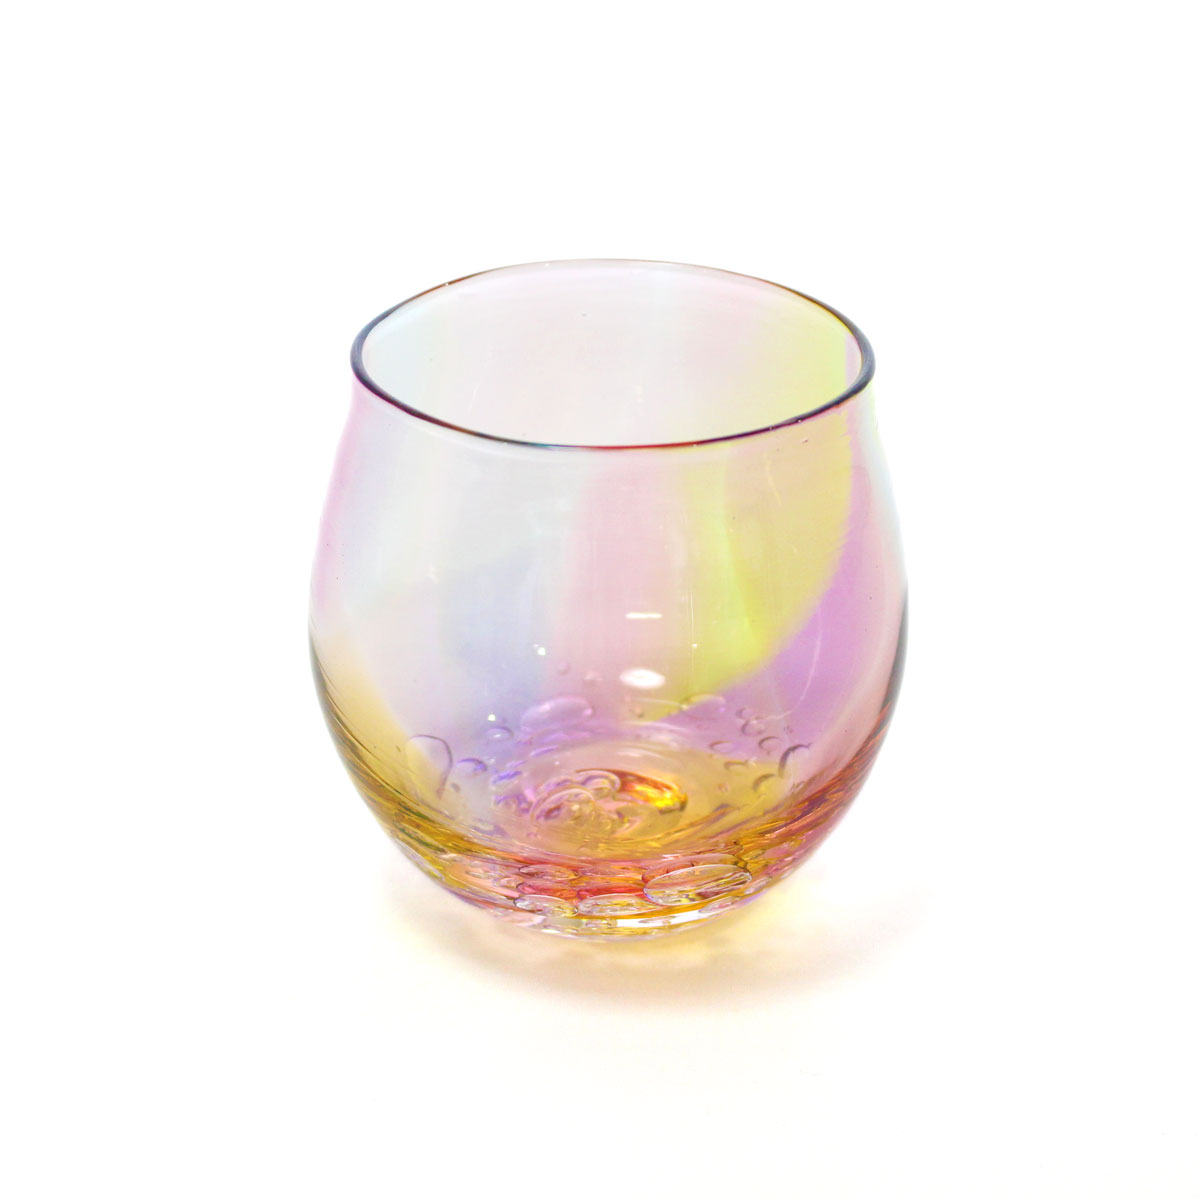 glass calico プリズムバブル 丸型 ロックグラス ウイスキー 焼酎 カクテル 梅酒 グラス グラスキャリコ ハンドメイド グラス おしゃれ 来客用 ギフト プレゼント